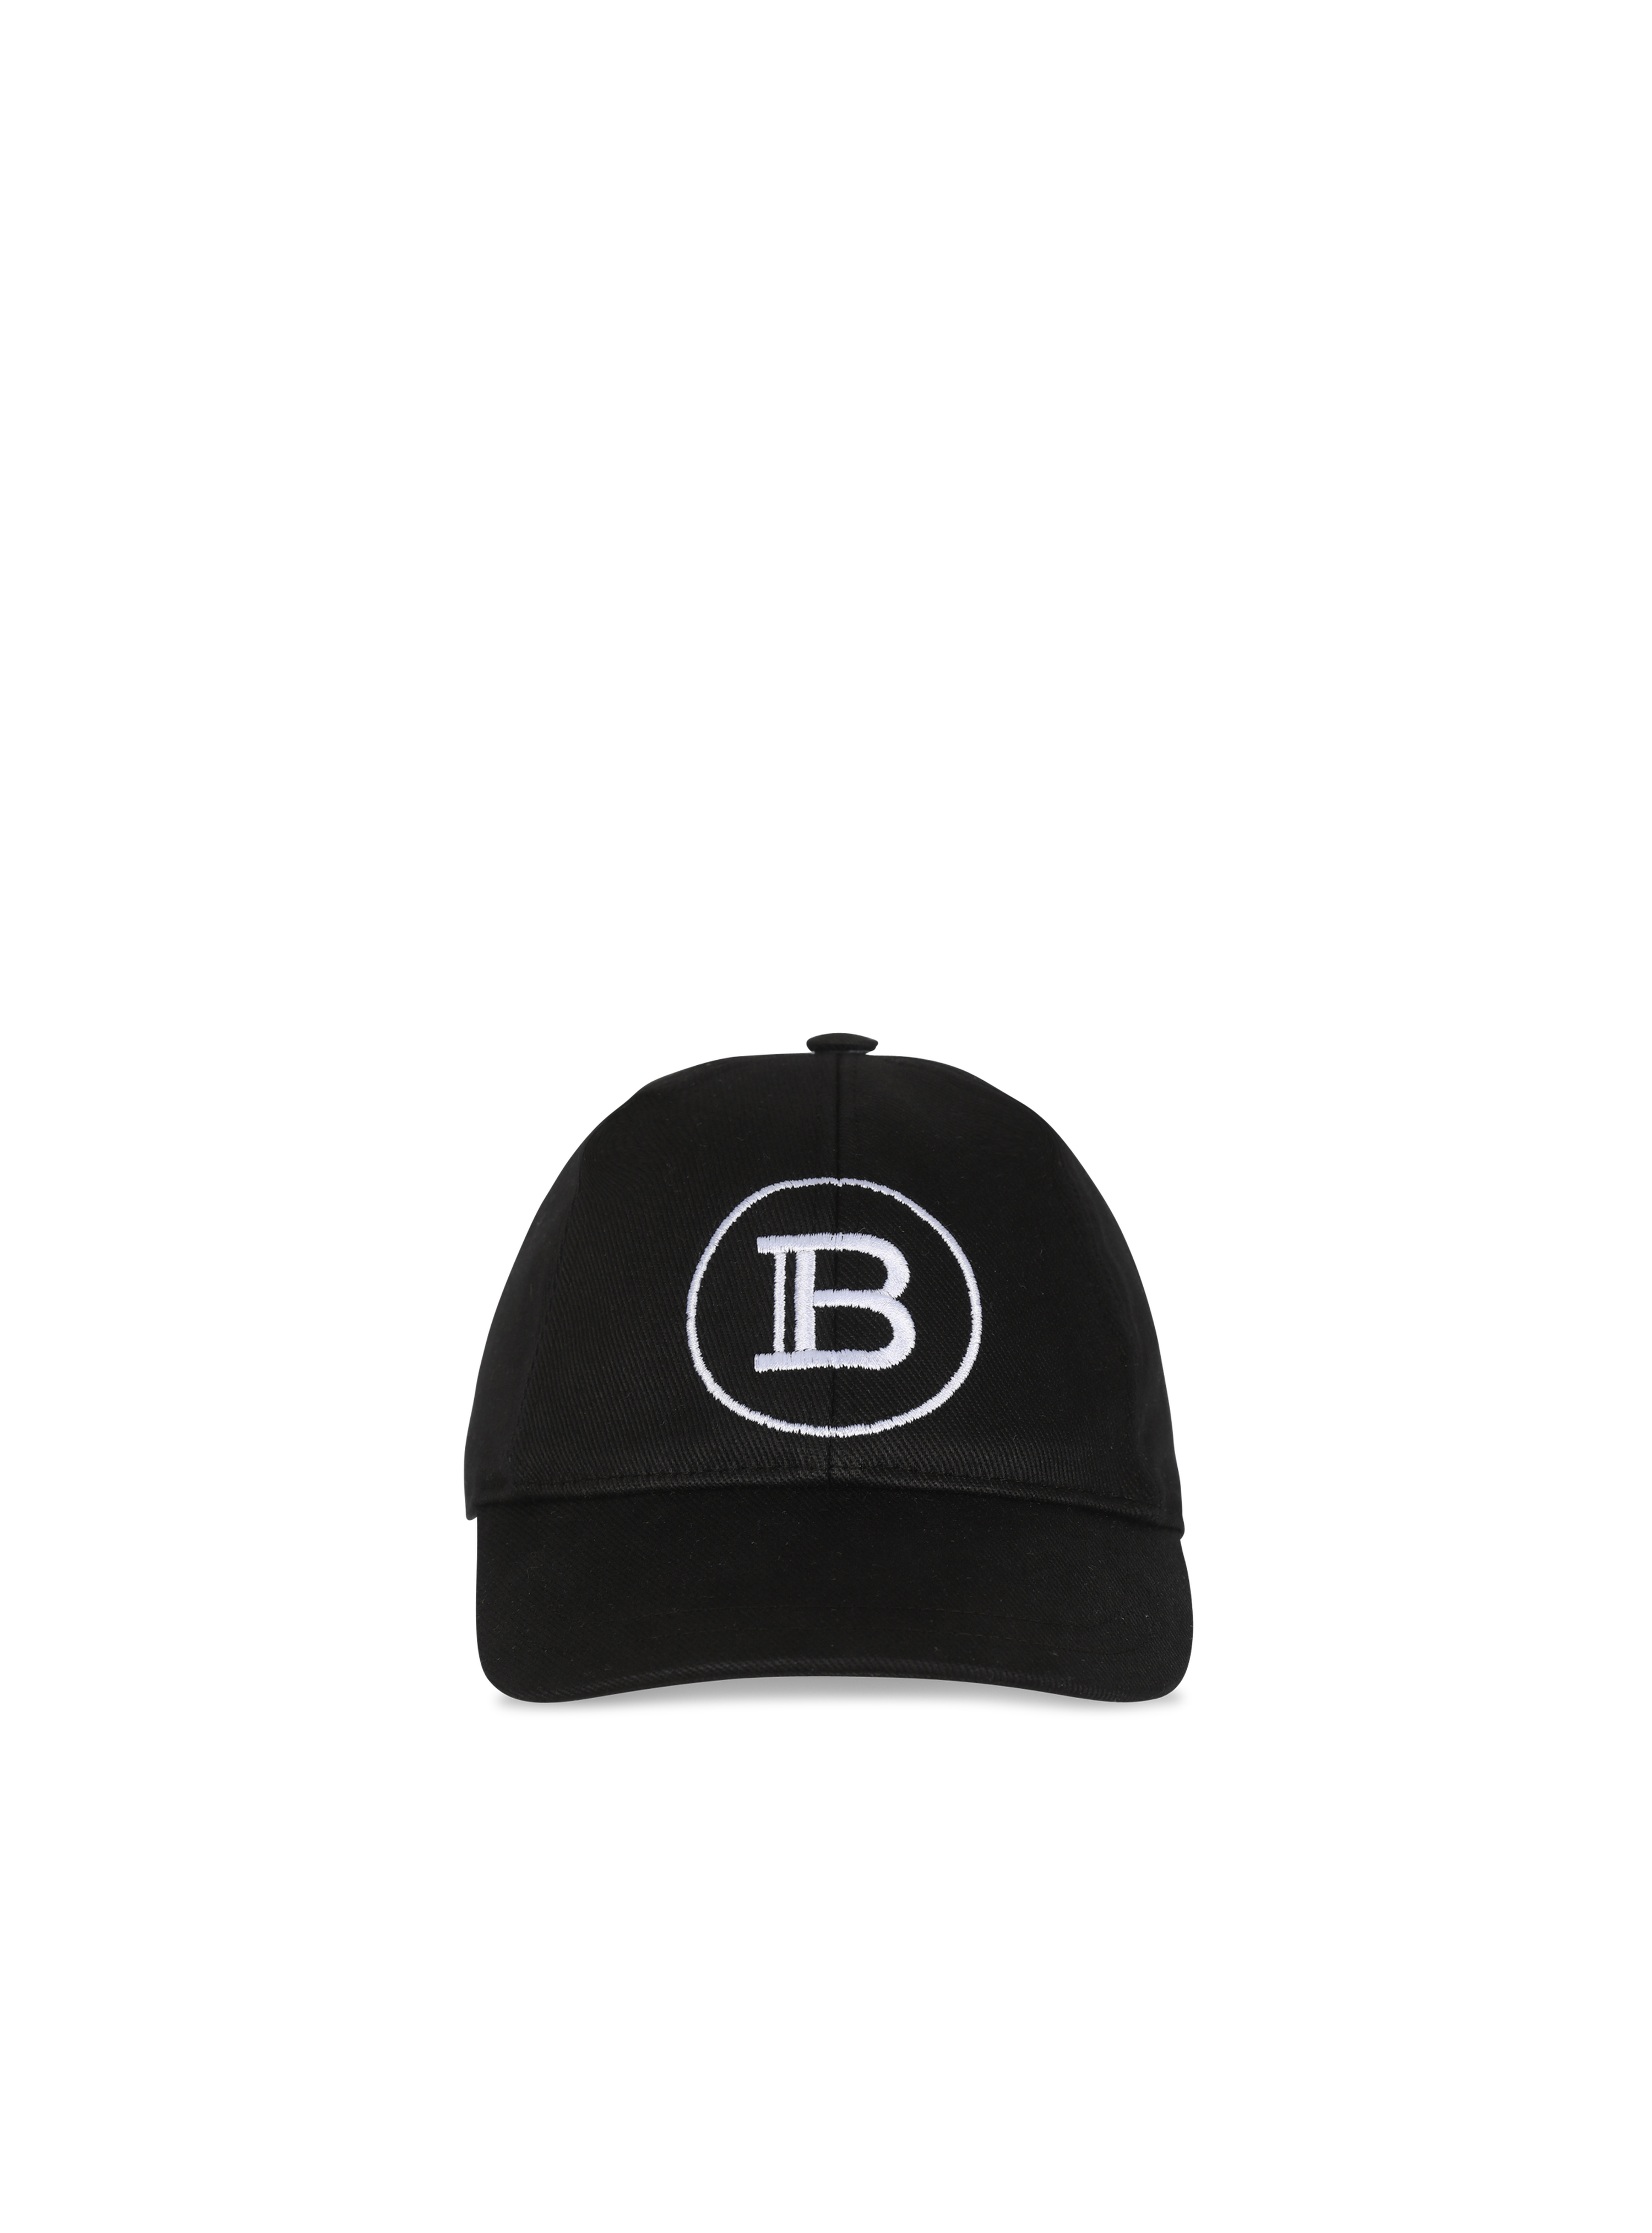 Cotton cap with Balmain logo, black